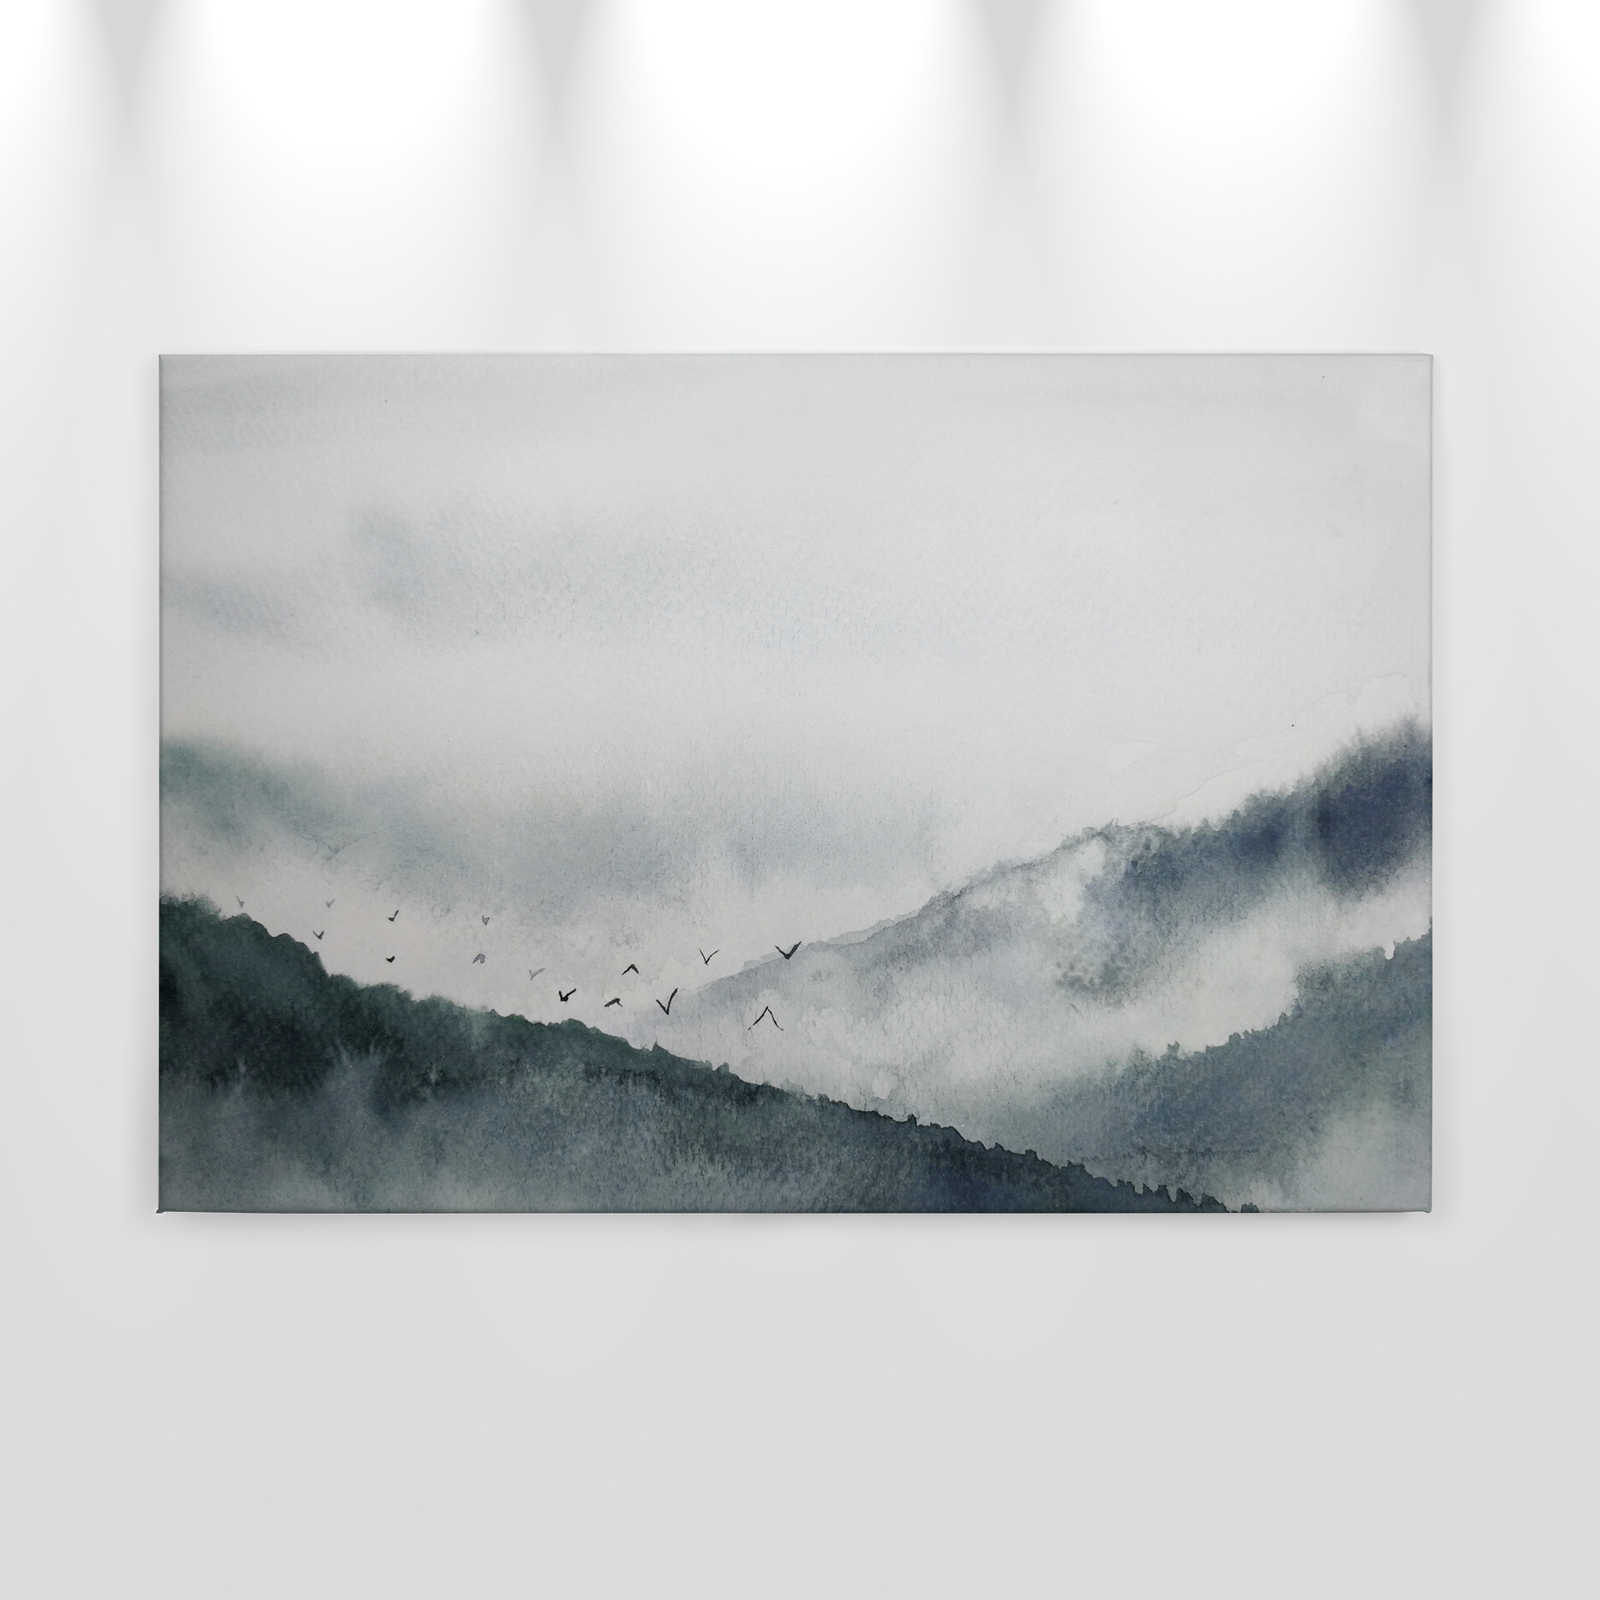             Leinwand mit nebeliger Landschaft im Gemälde-Stil | grau, schwarz – 0,90 m x 0,60 m
        